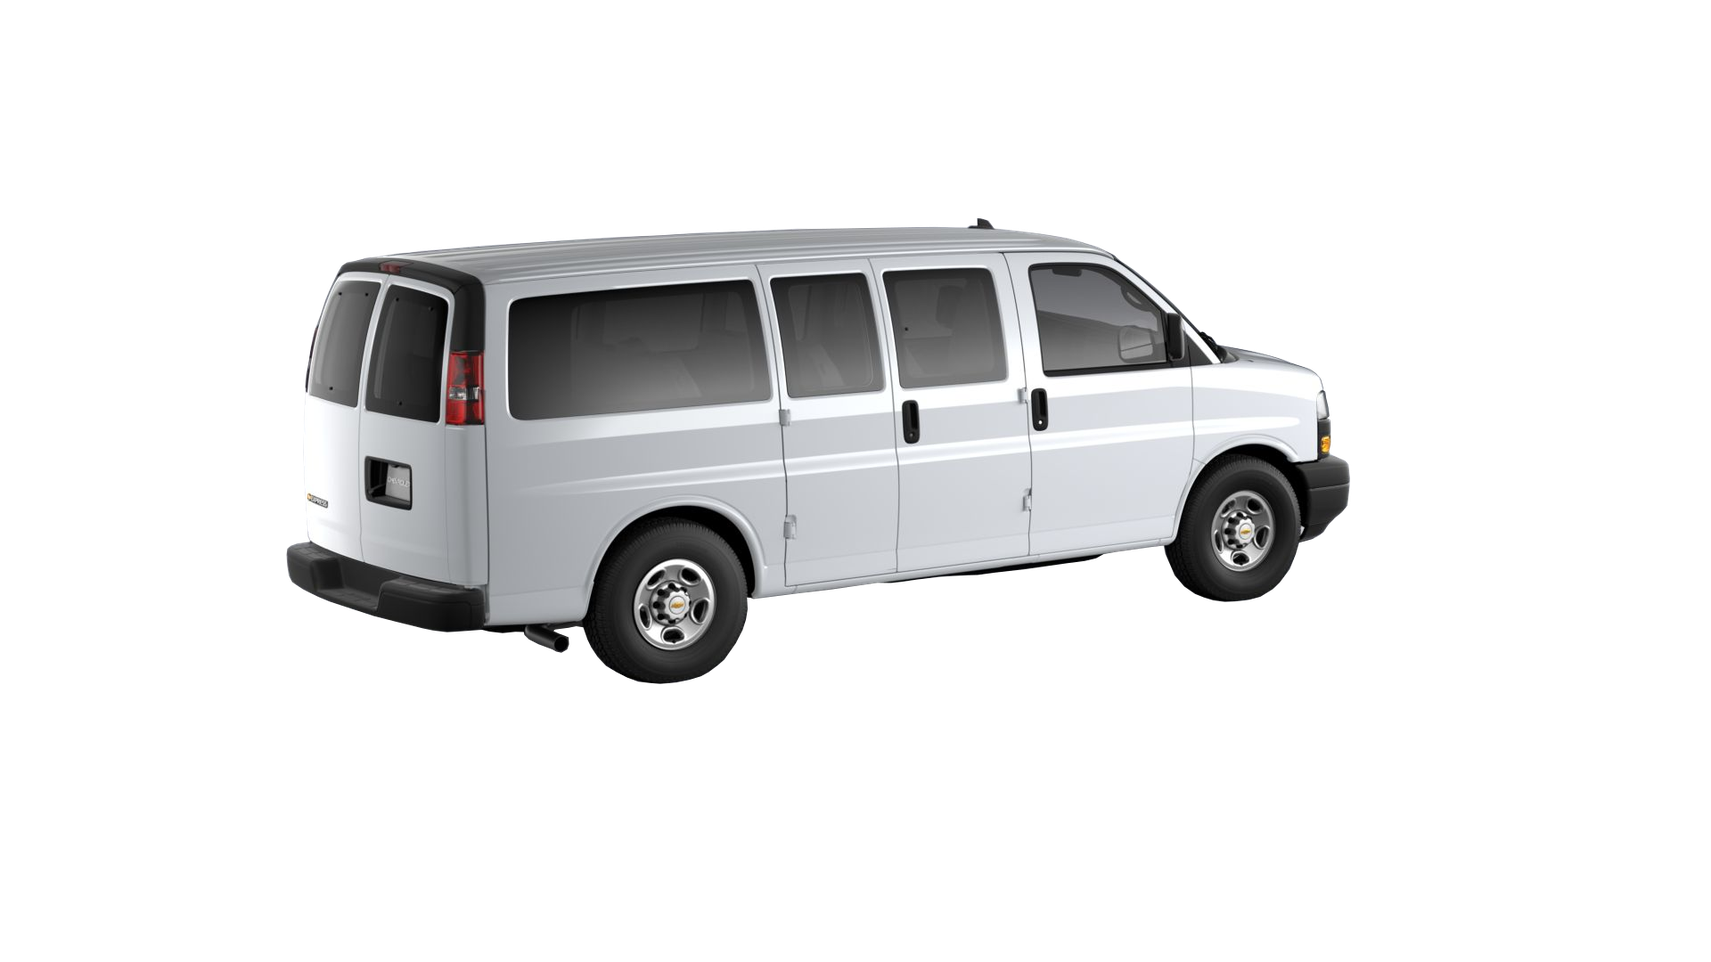 Chevrolet Express Passenger LS 2500 Regular Wheelbase 2020 4.3 V6 VVT Бензин 8 ст. АКПП Задний  